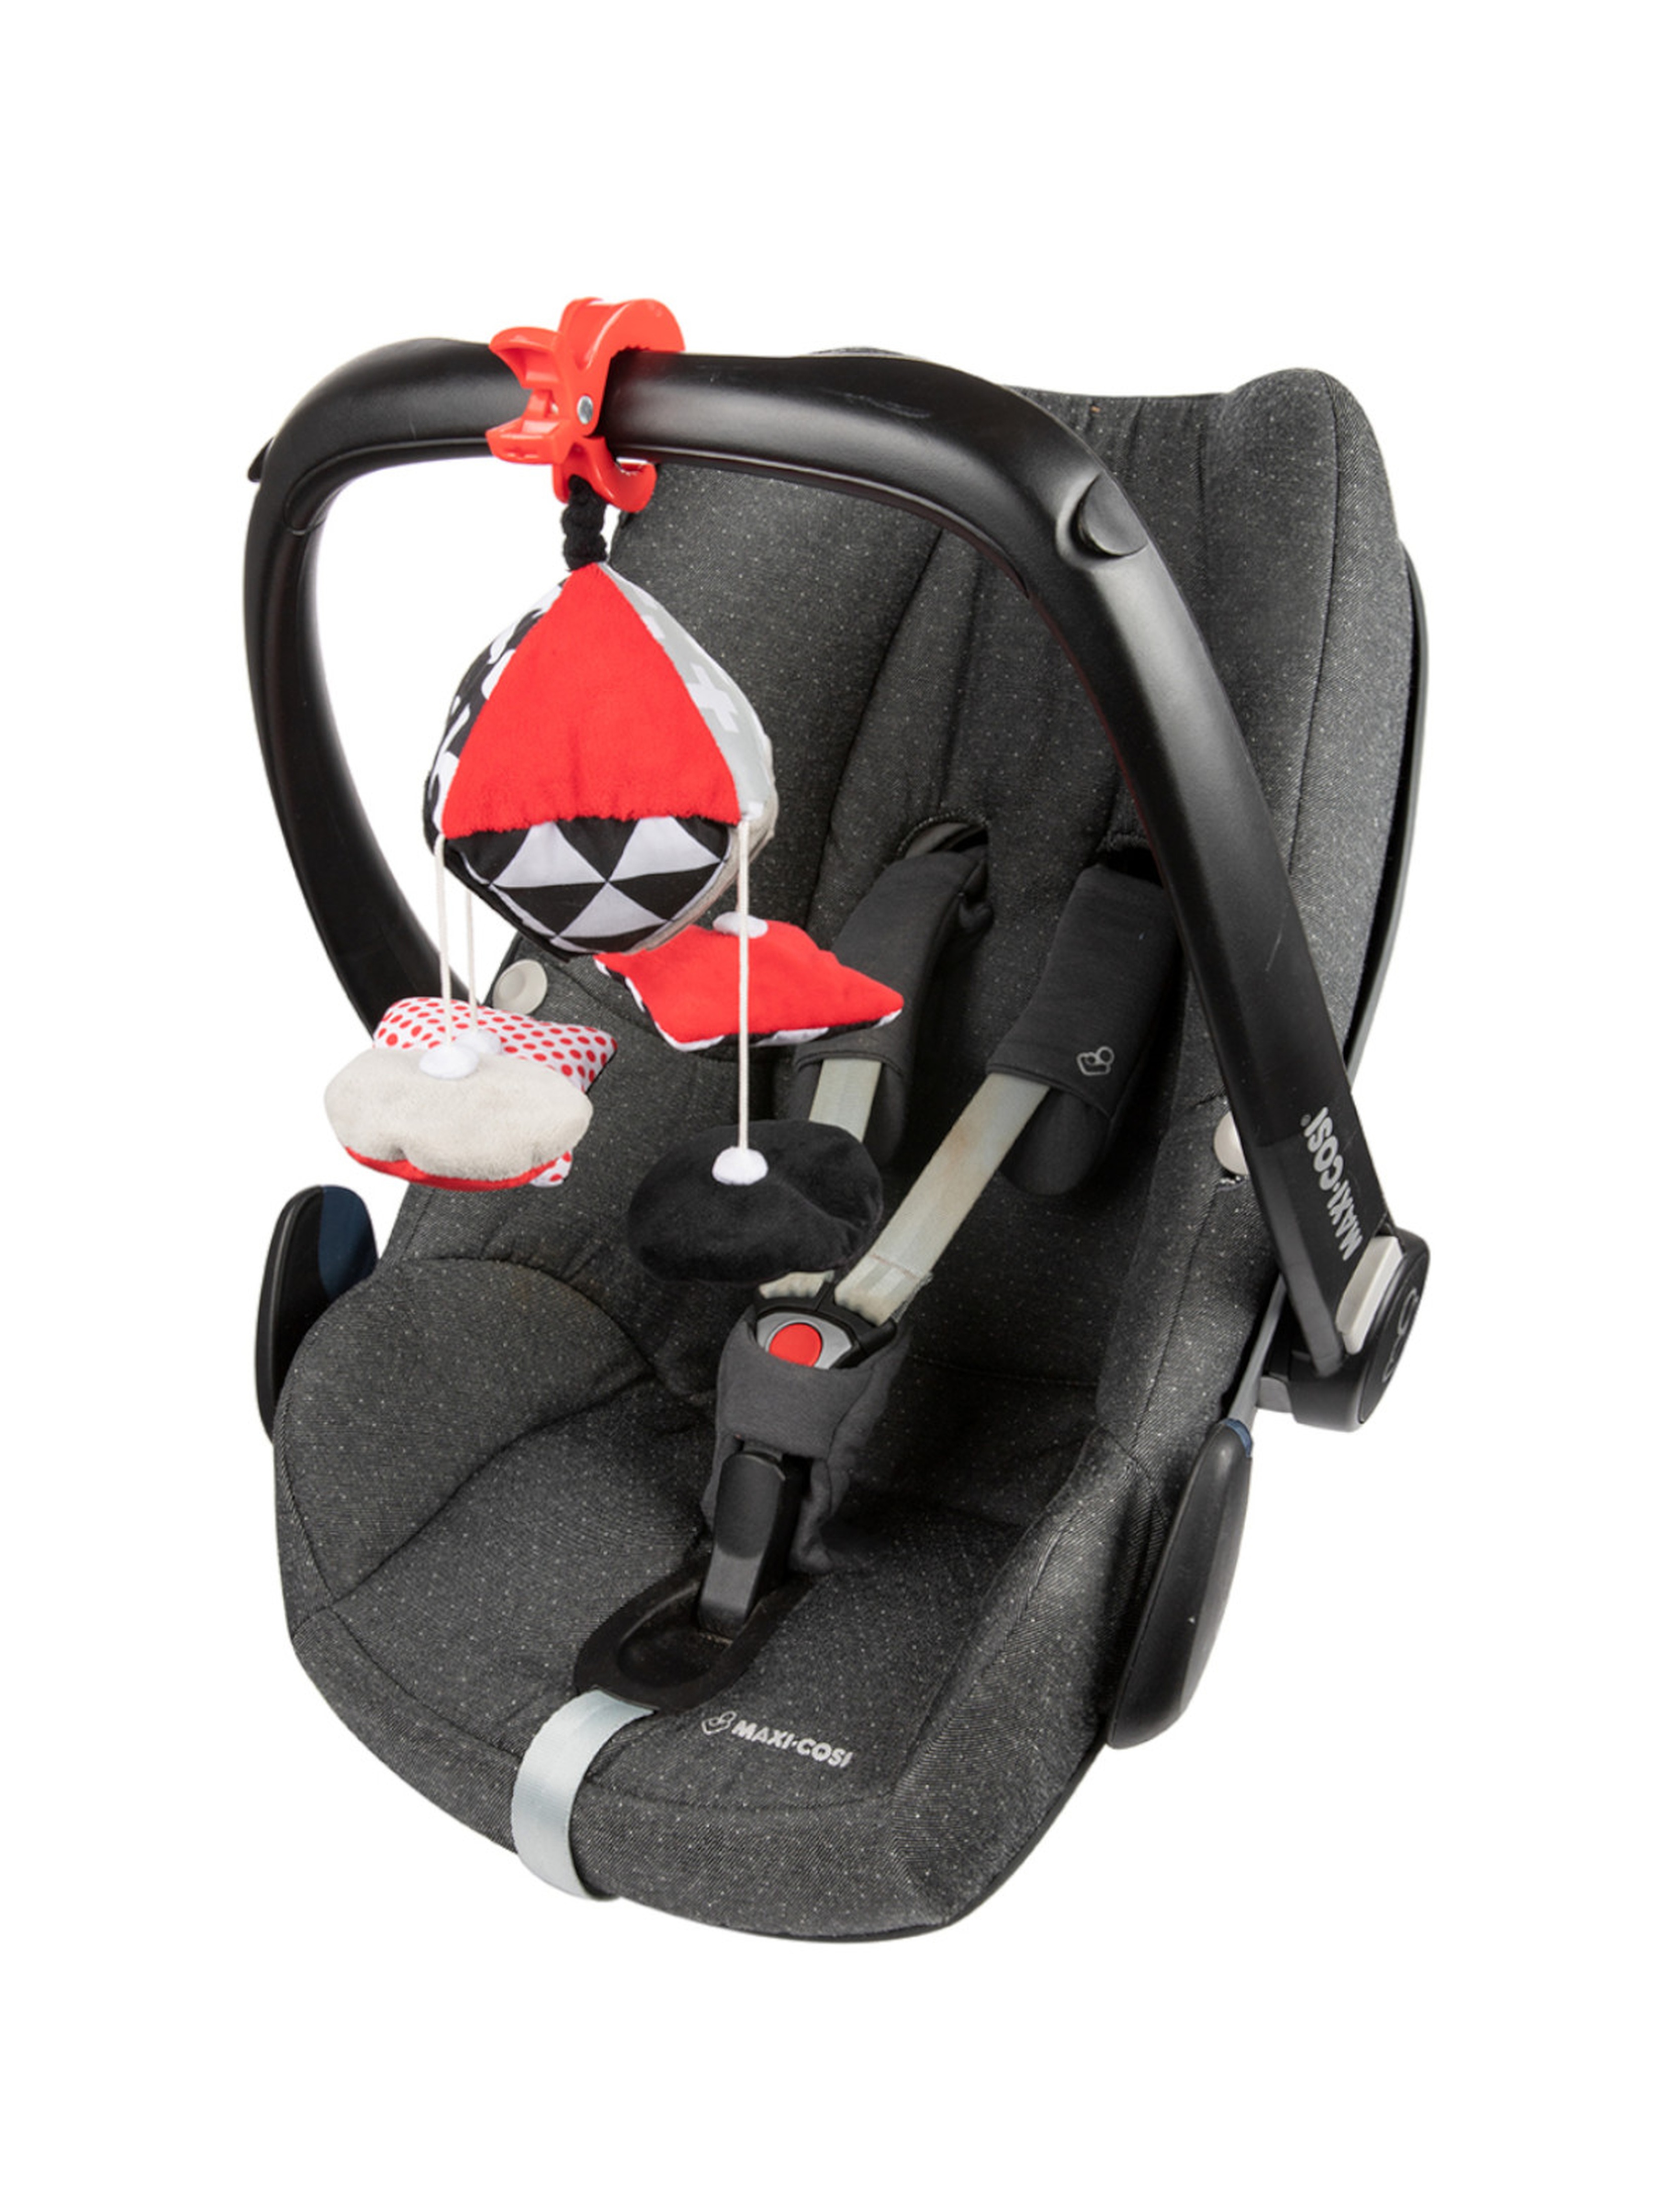 Canpol babies kontrastowa karuzelka podróżna do wózka lub fotelika SENSORY